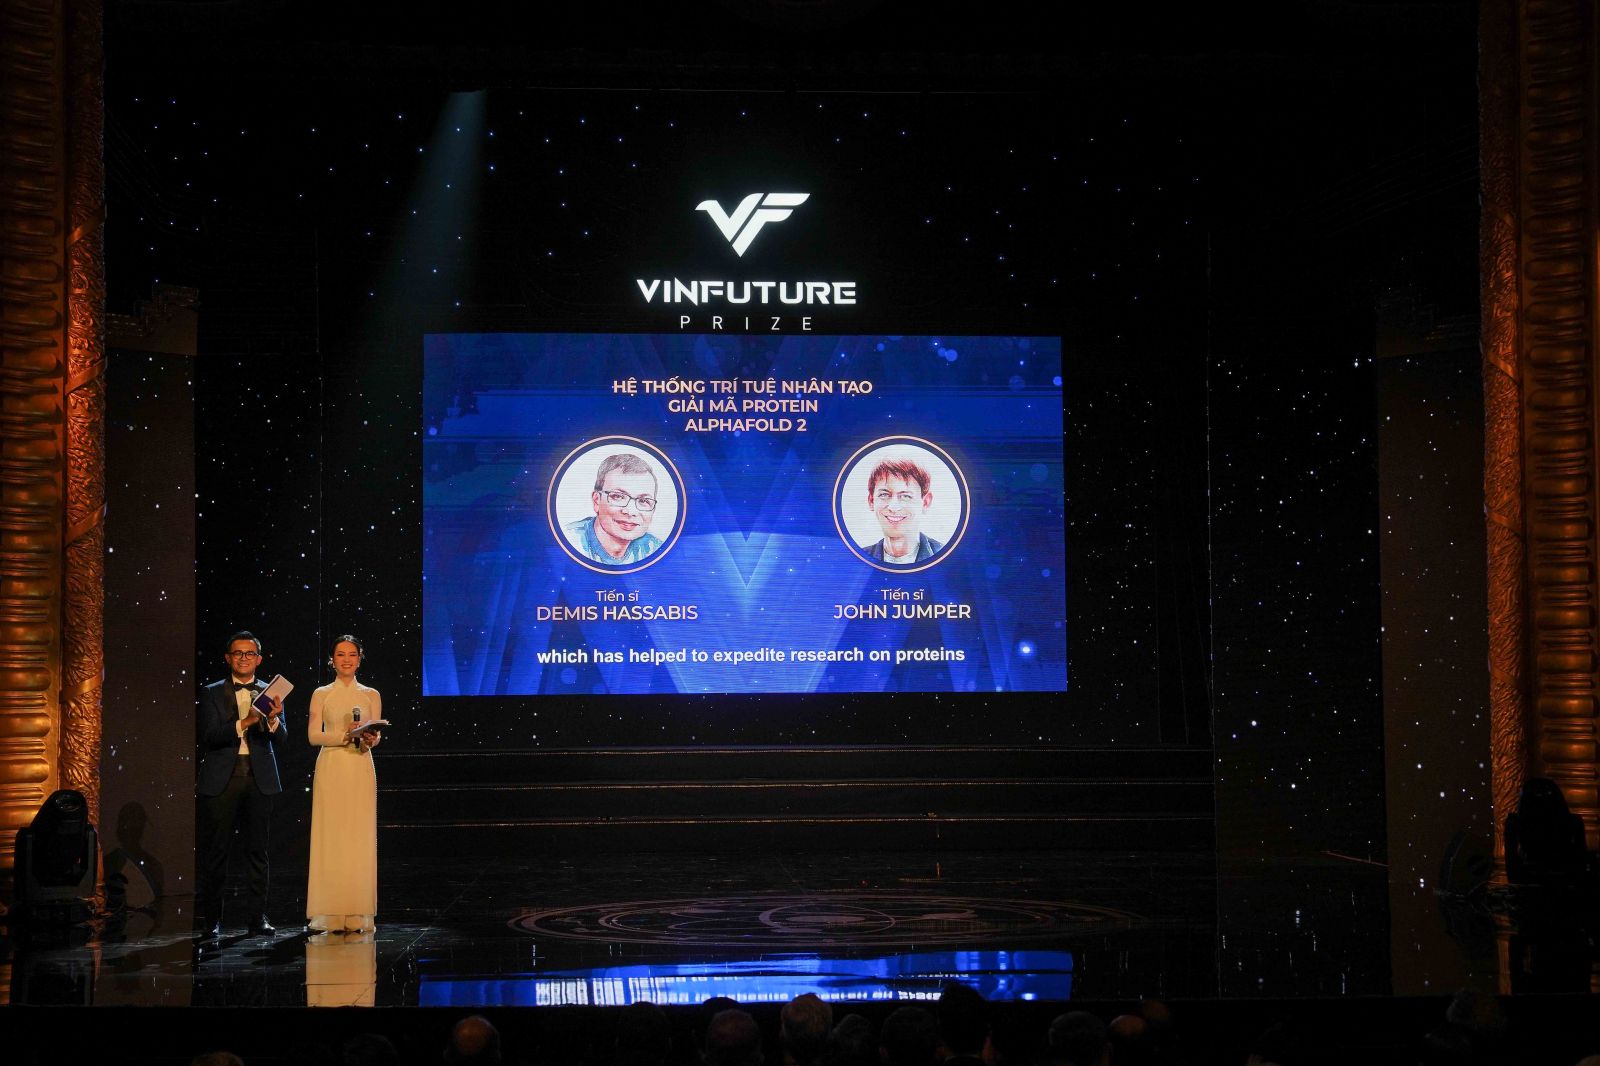 Giải Đặc biệt VinFuture 2022 dành cho Nhà khoa học nghiên cứu các lĩnh vực mới đã được trao cho Tiến sĩ Demis Hassabis (Vương Quốc Anh) và Tiến sĩ John Jumper (Hoa Kỳ) với công trình tiên phong về hệ thống trí tuệ nhân tạo giải mã protein AlphaFold 2,